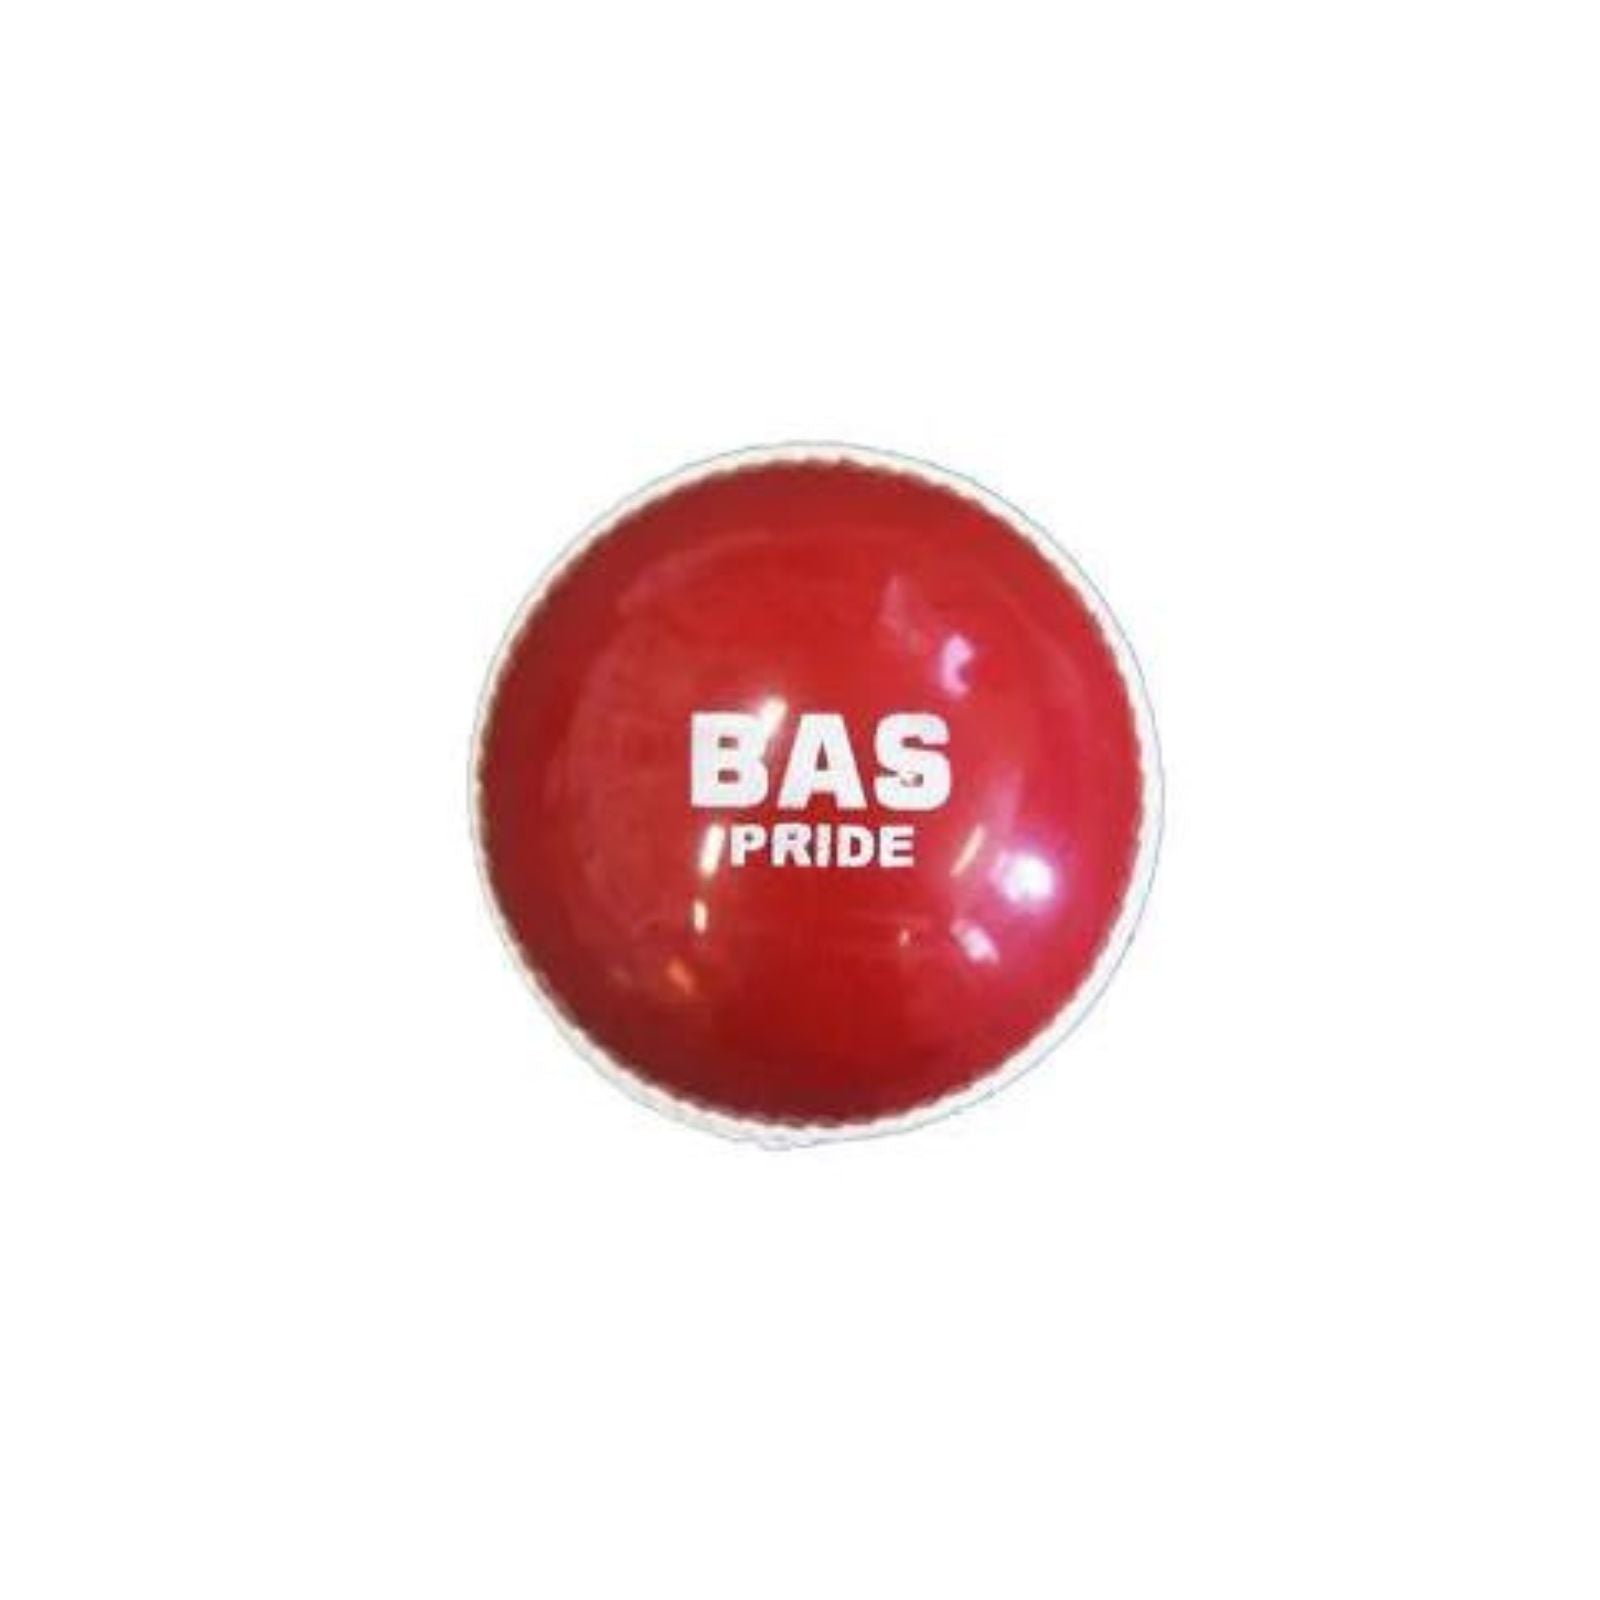 BAS Pride Soft Centre Ball - Red White